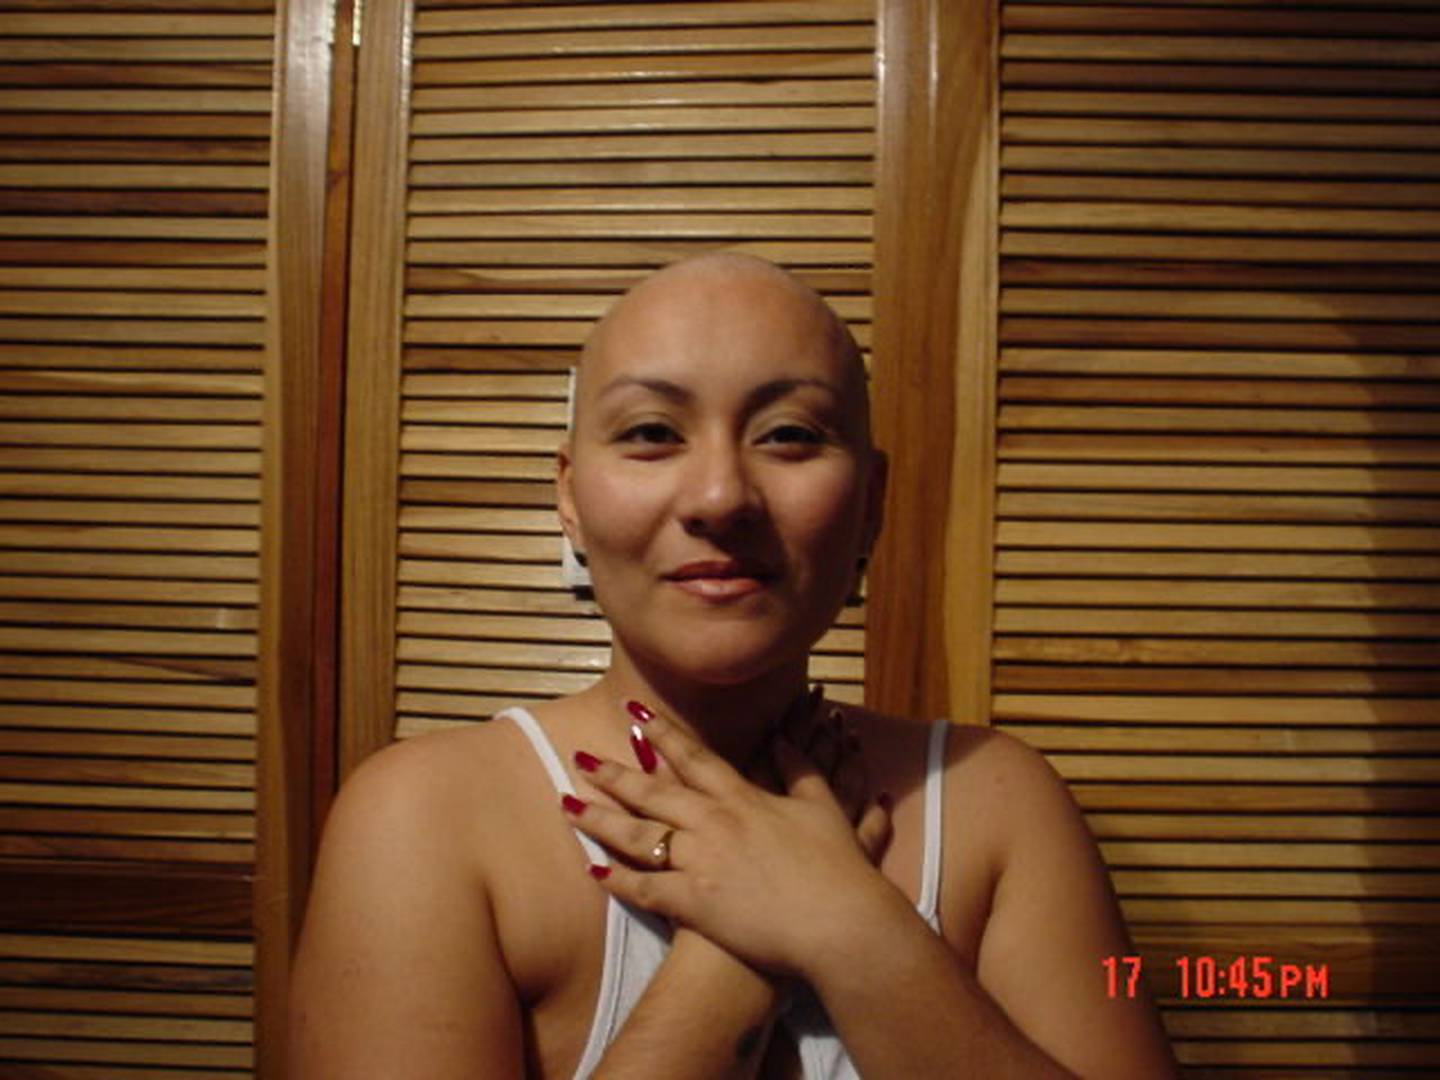 El 13 de octubre del 2003 a doña Vivian Leal Barquero le explotó su vida en mil pedazos porque le dijeron que tenía cáncer de mama en grado 4